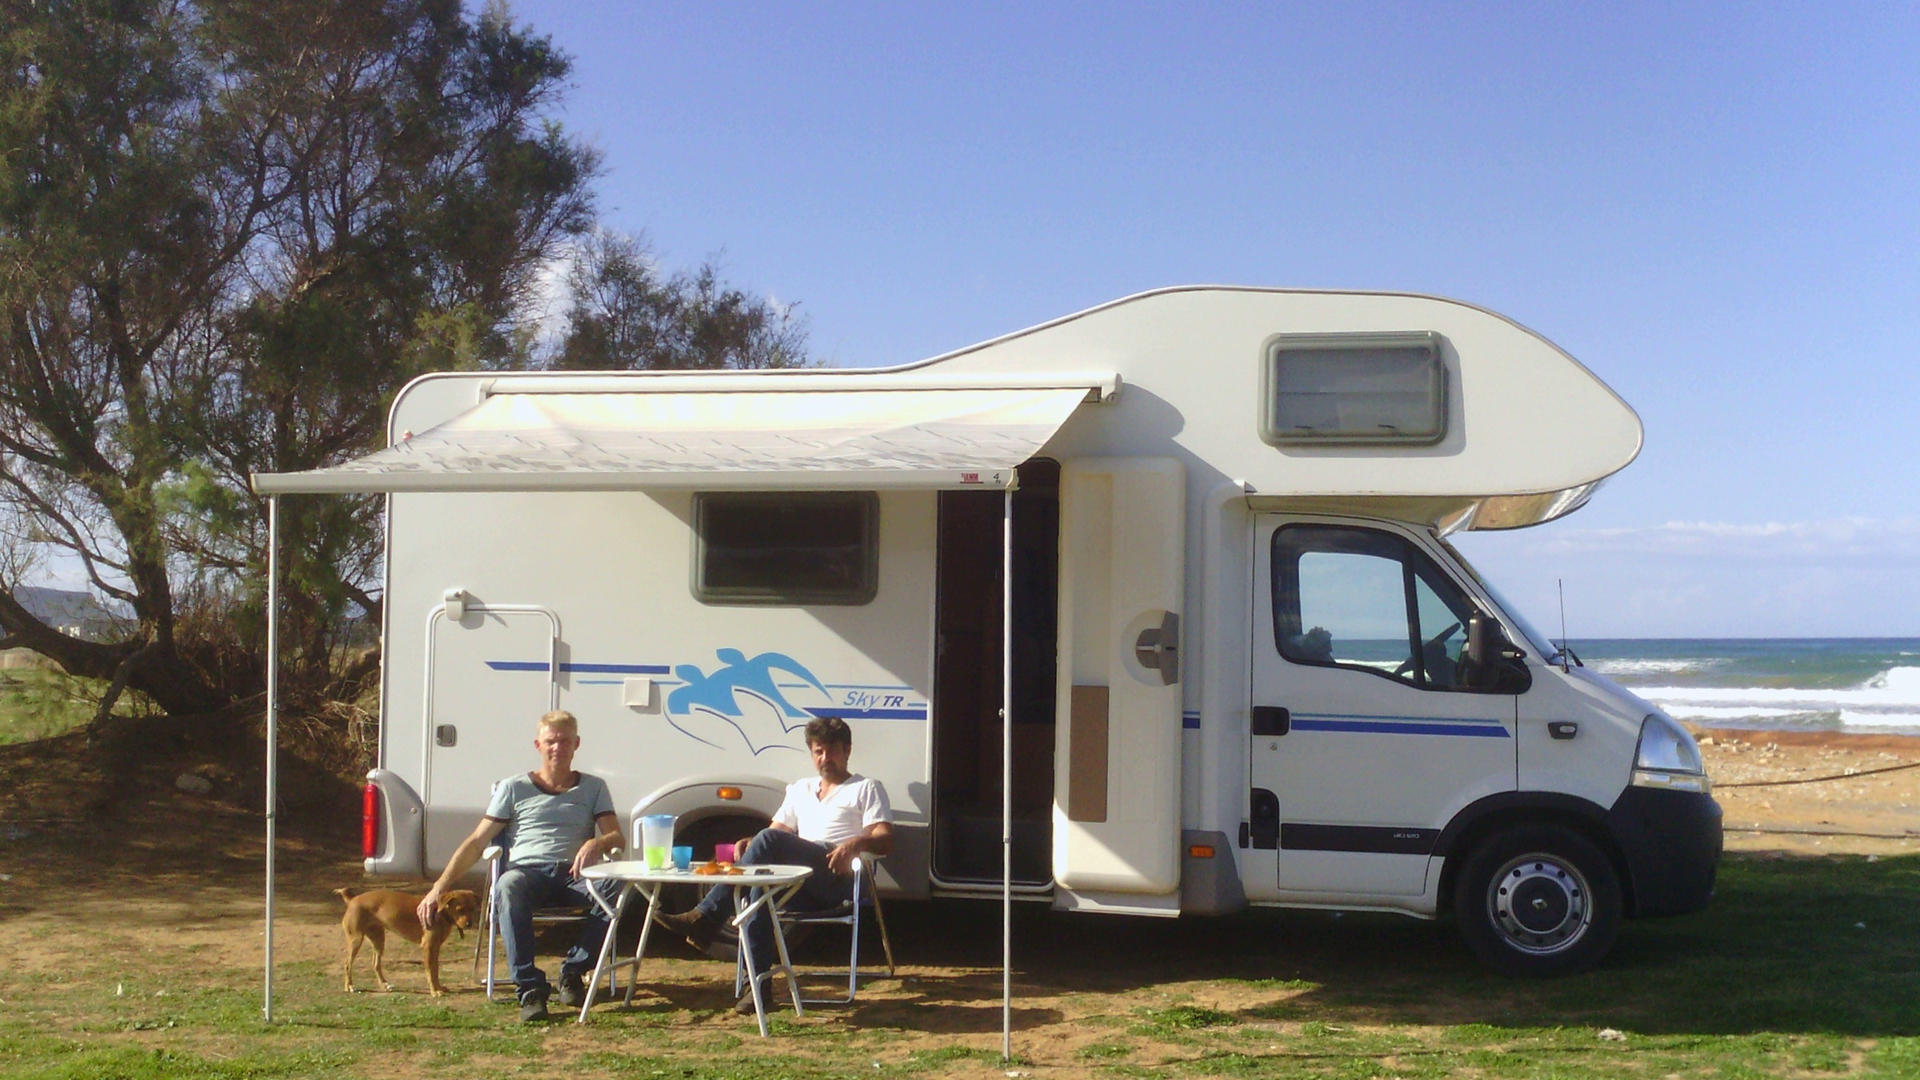 First camper rental company at Crete!